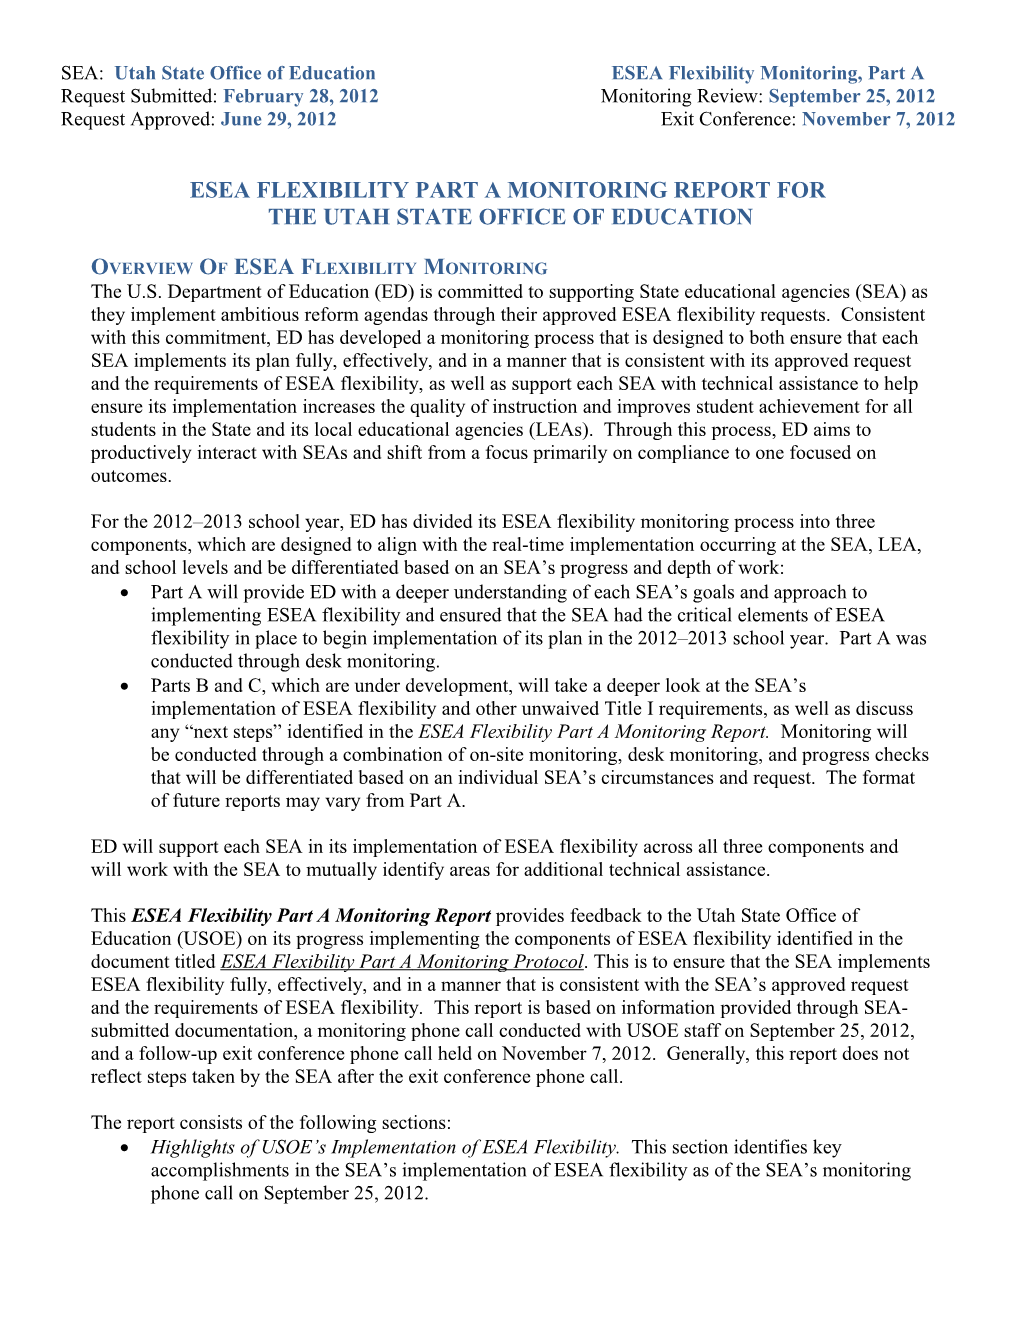 ESEA Title I Part a Monitoring Report 2-28-2013